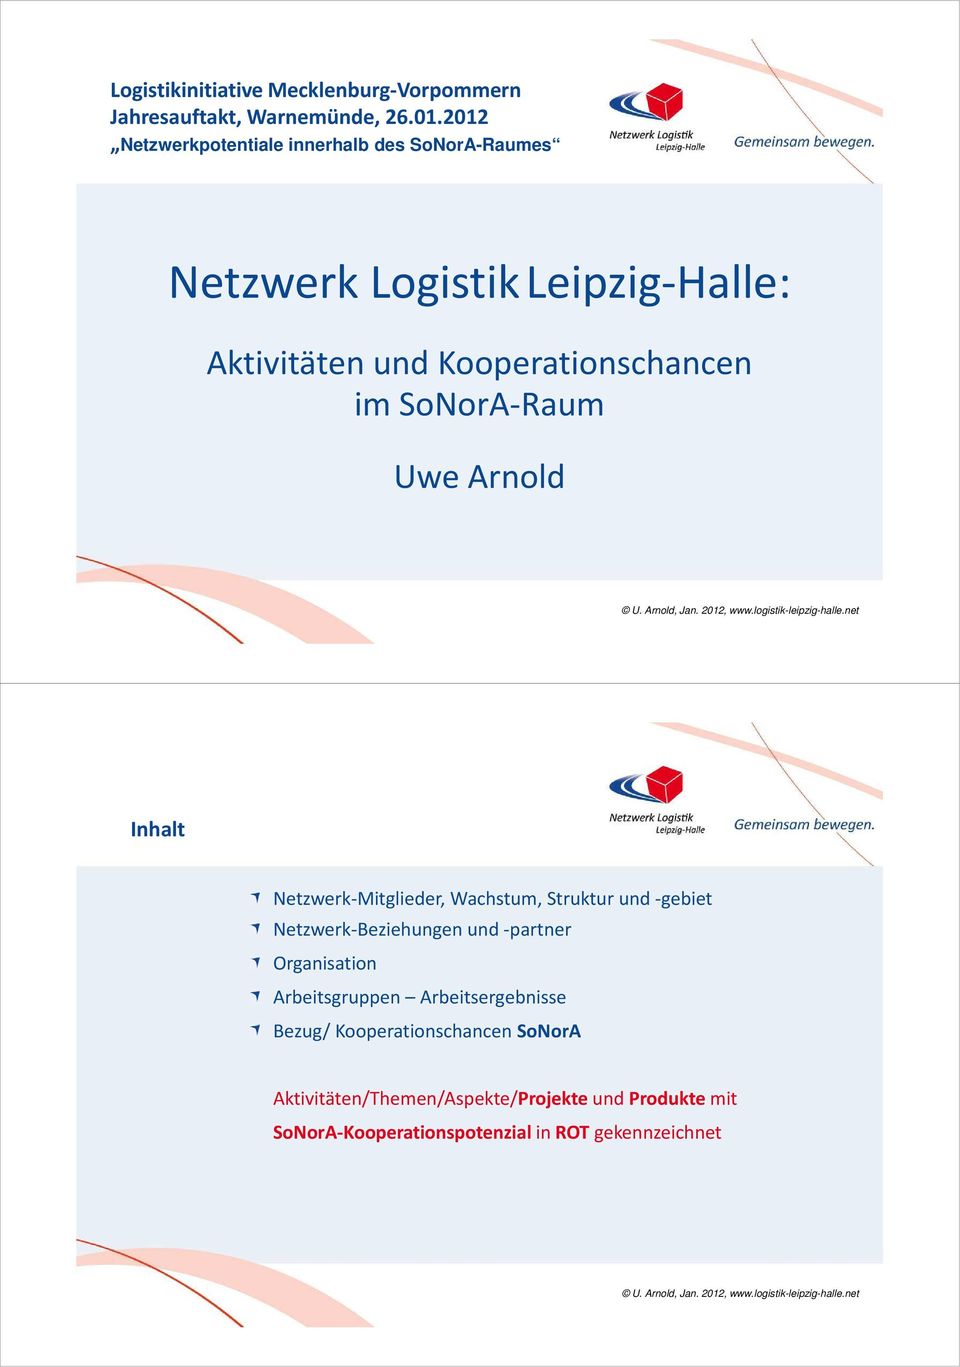 SoNorA-Raum Uwe Arnold Inhalt Netzwerk-Mitglieder, Wachstum, Struktur und -gebiet Netzwerk-Beziehungen und -partner